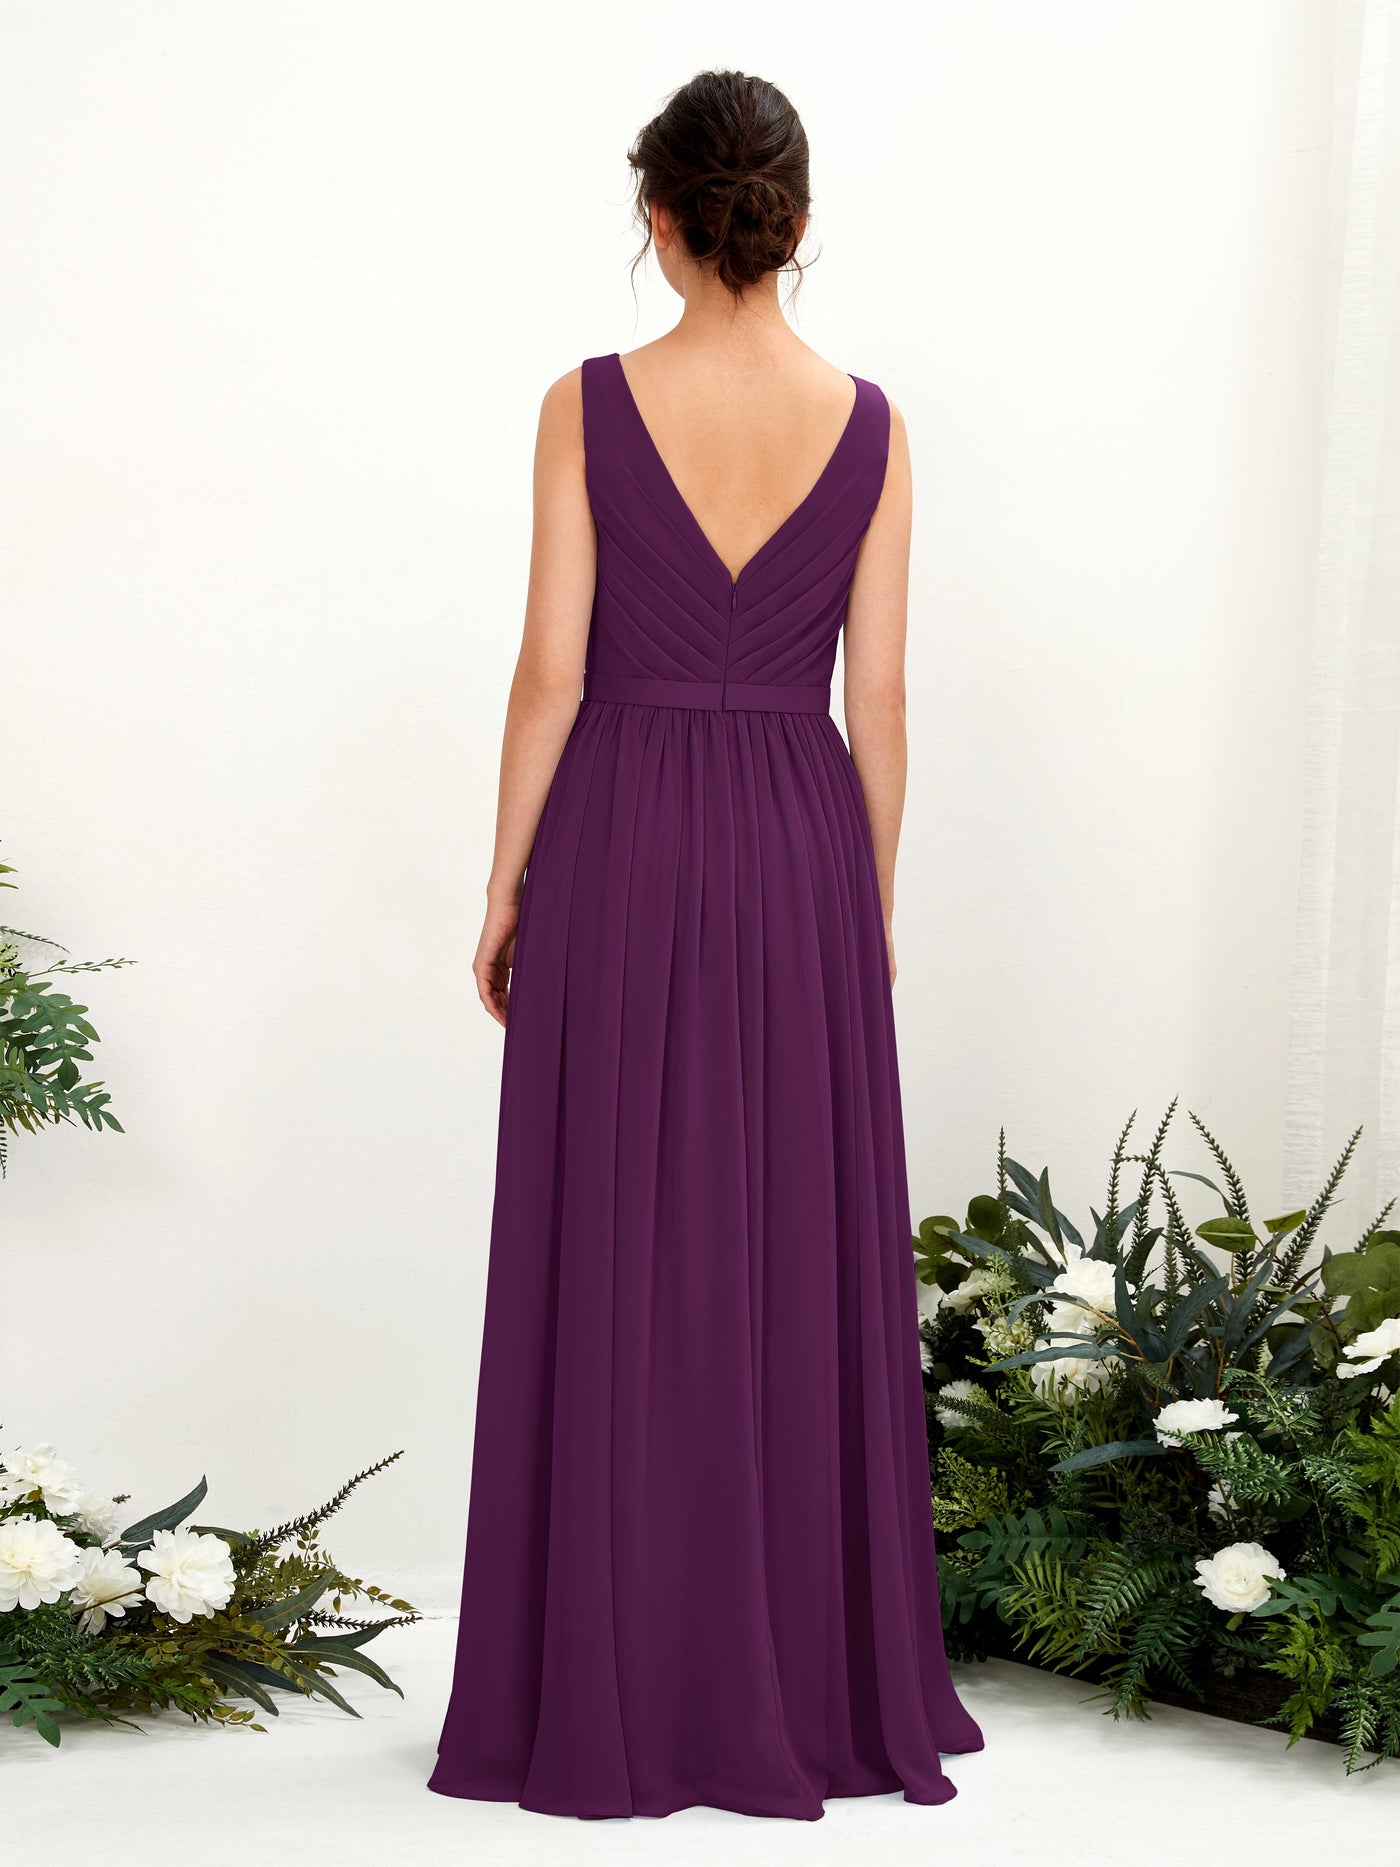 Grape Bridesmaid Dresses Bridesmaid Dress A-line Chiffon V-neck Full Length Sleeveless Wedding Party Dress (81223631)#color_grape